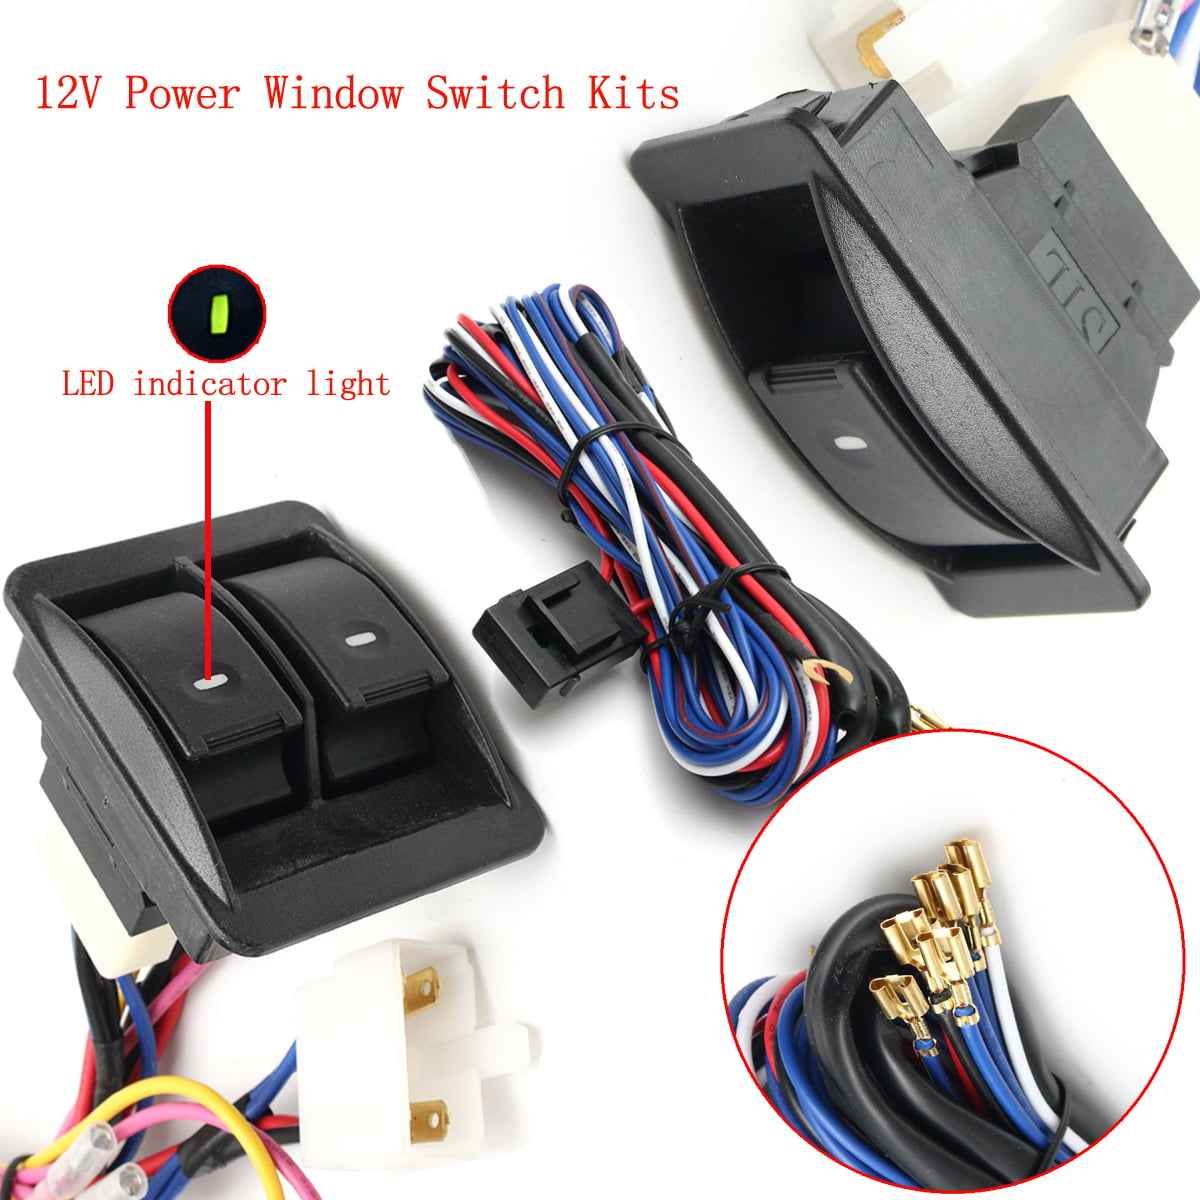 12V Universal Auto Power Window Switch Kits W/Wiring Harness & Switch Holder NEW